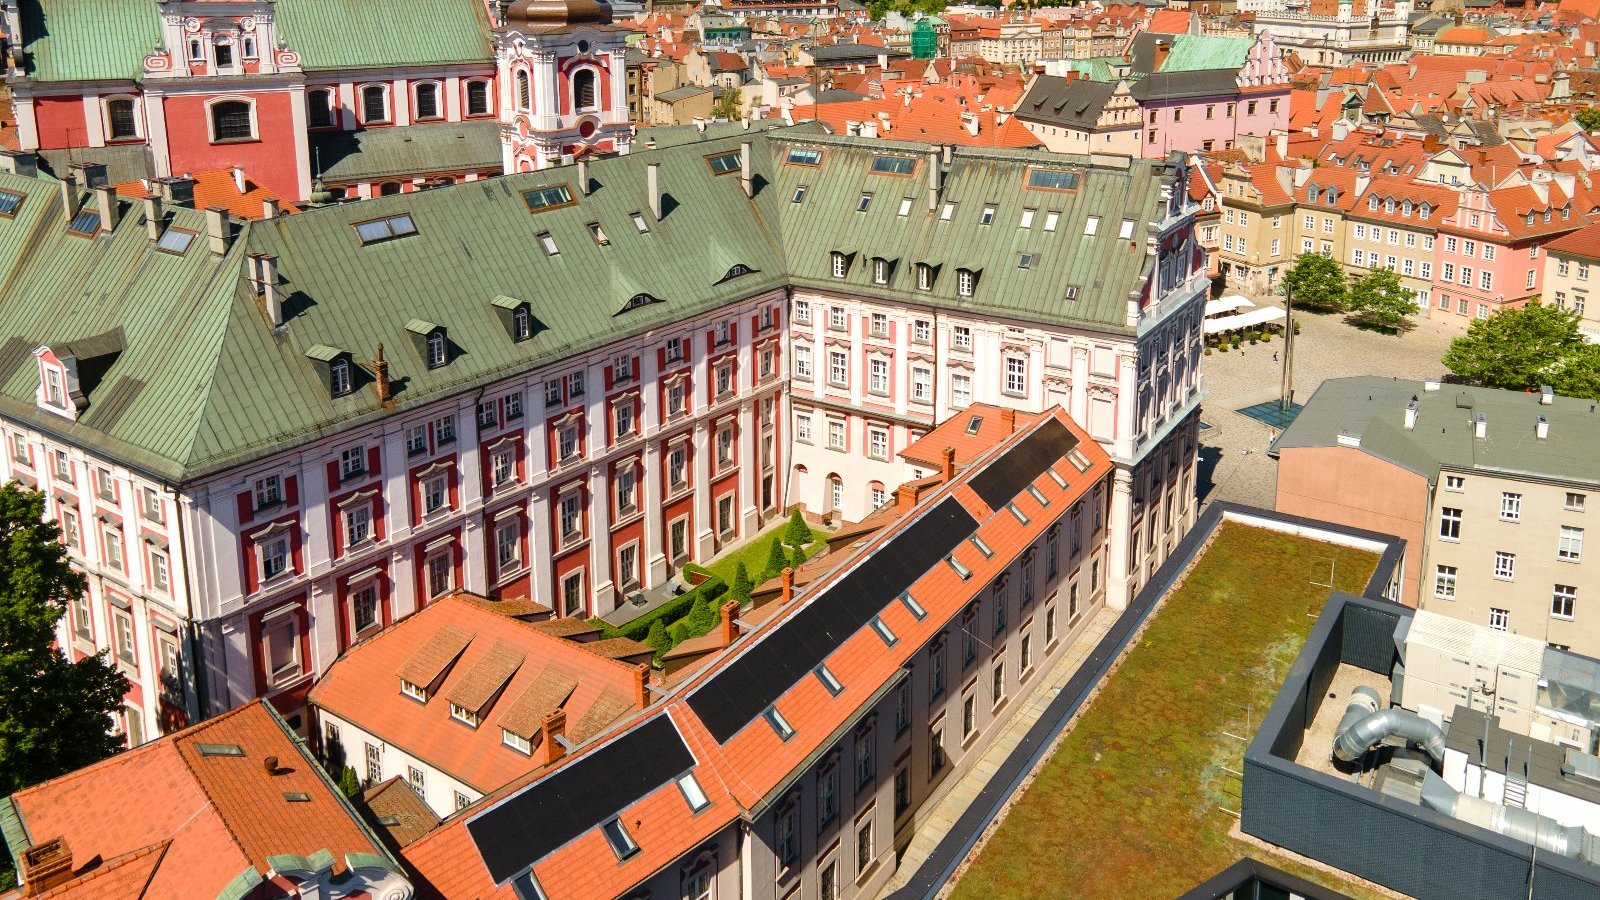 Zdjęcie przedstawia urząd miasta z góry. Na dachu widać panele fotowoltaiczne.